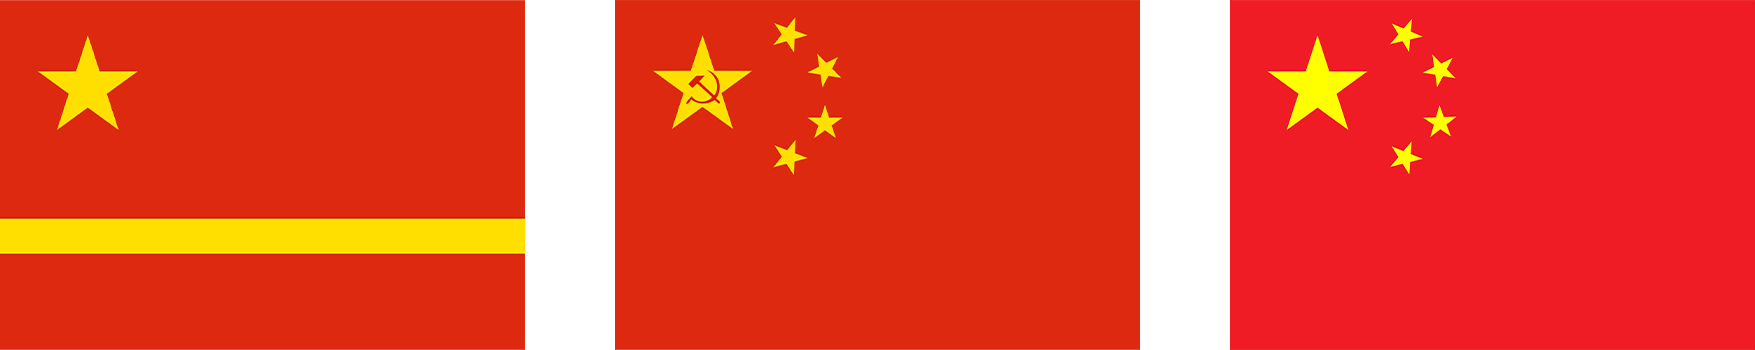 Comment le drapeau de la République populaire de Chine a-t-il été créé ? Histoire du drapeau de la Chine.